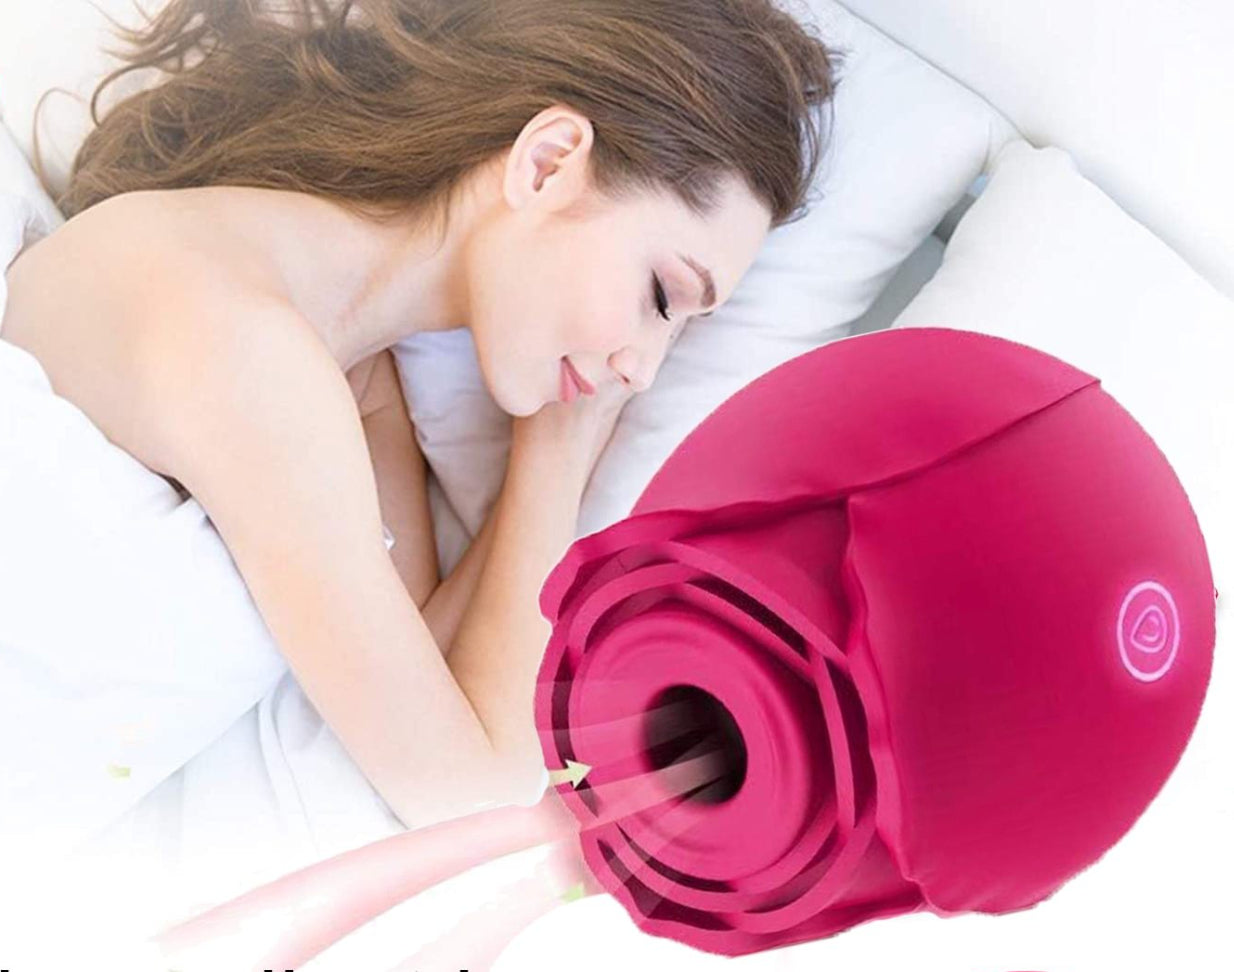 Simplee Discreet Rose Intimate Vibrator